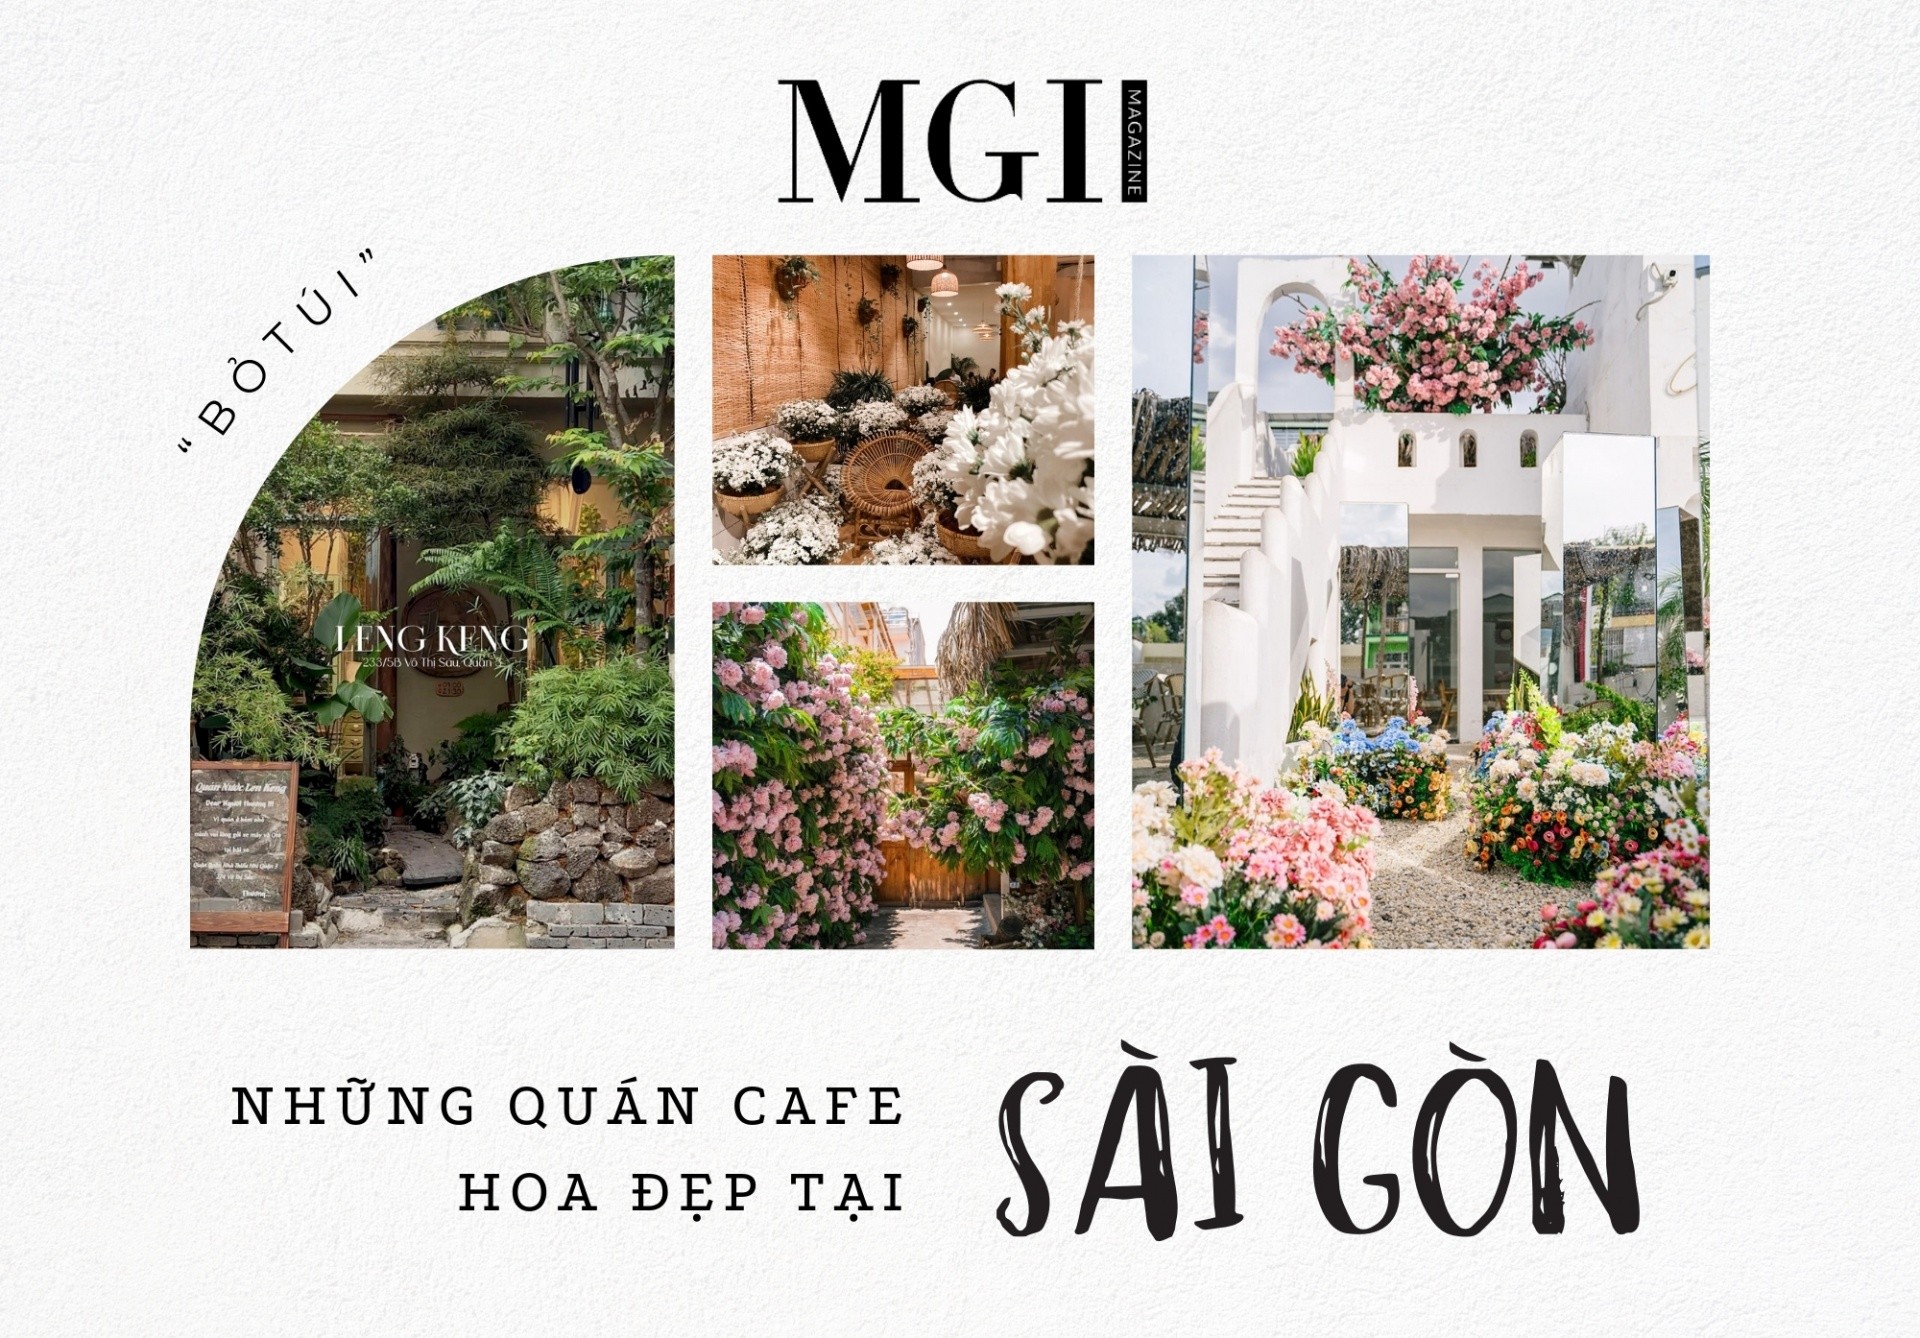 “Bỏ túi” ngay những quán cafe hoa đẹp tại Sài Gòn